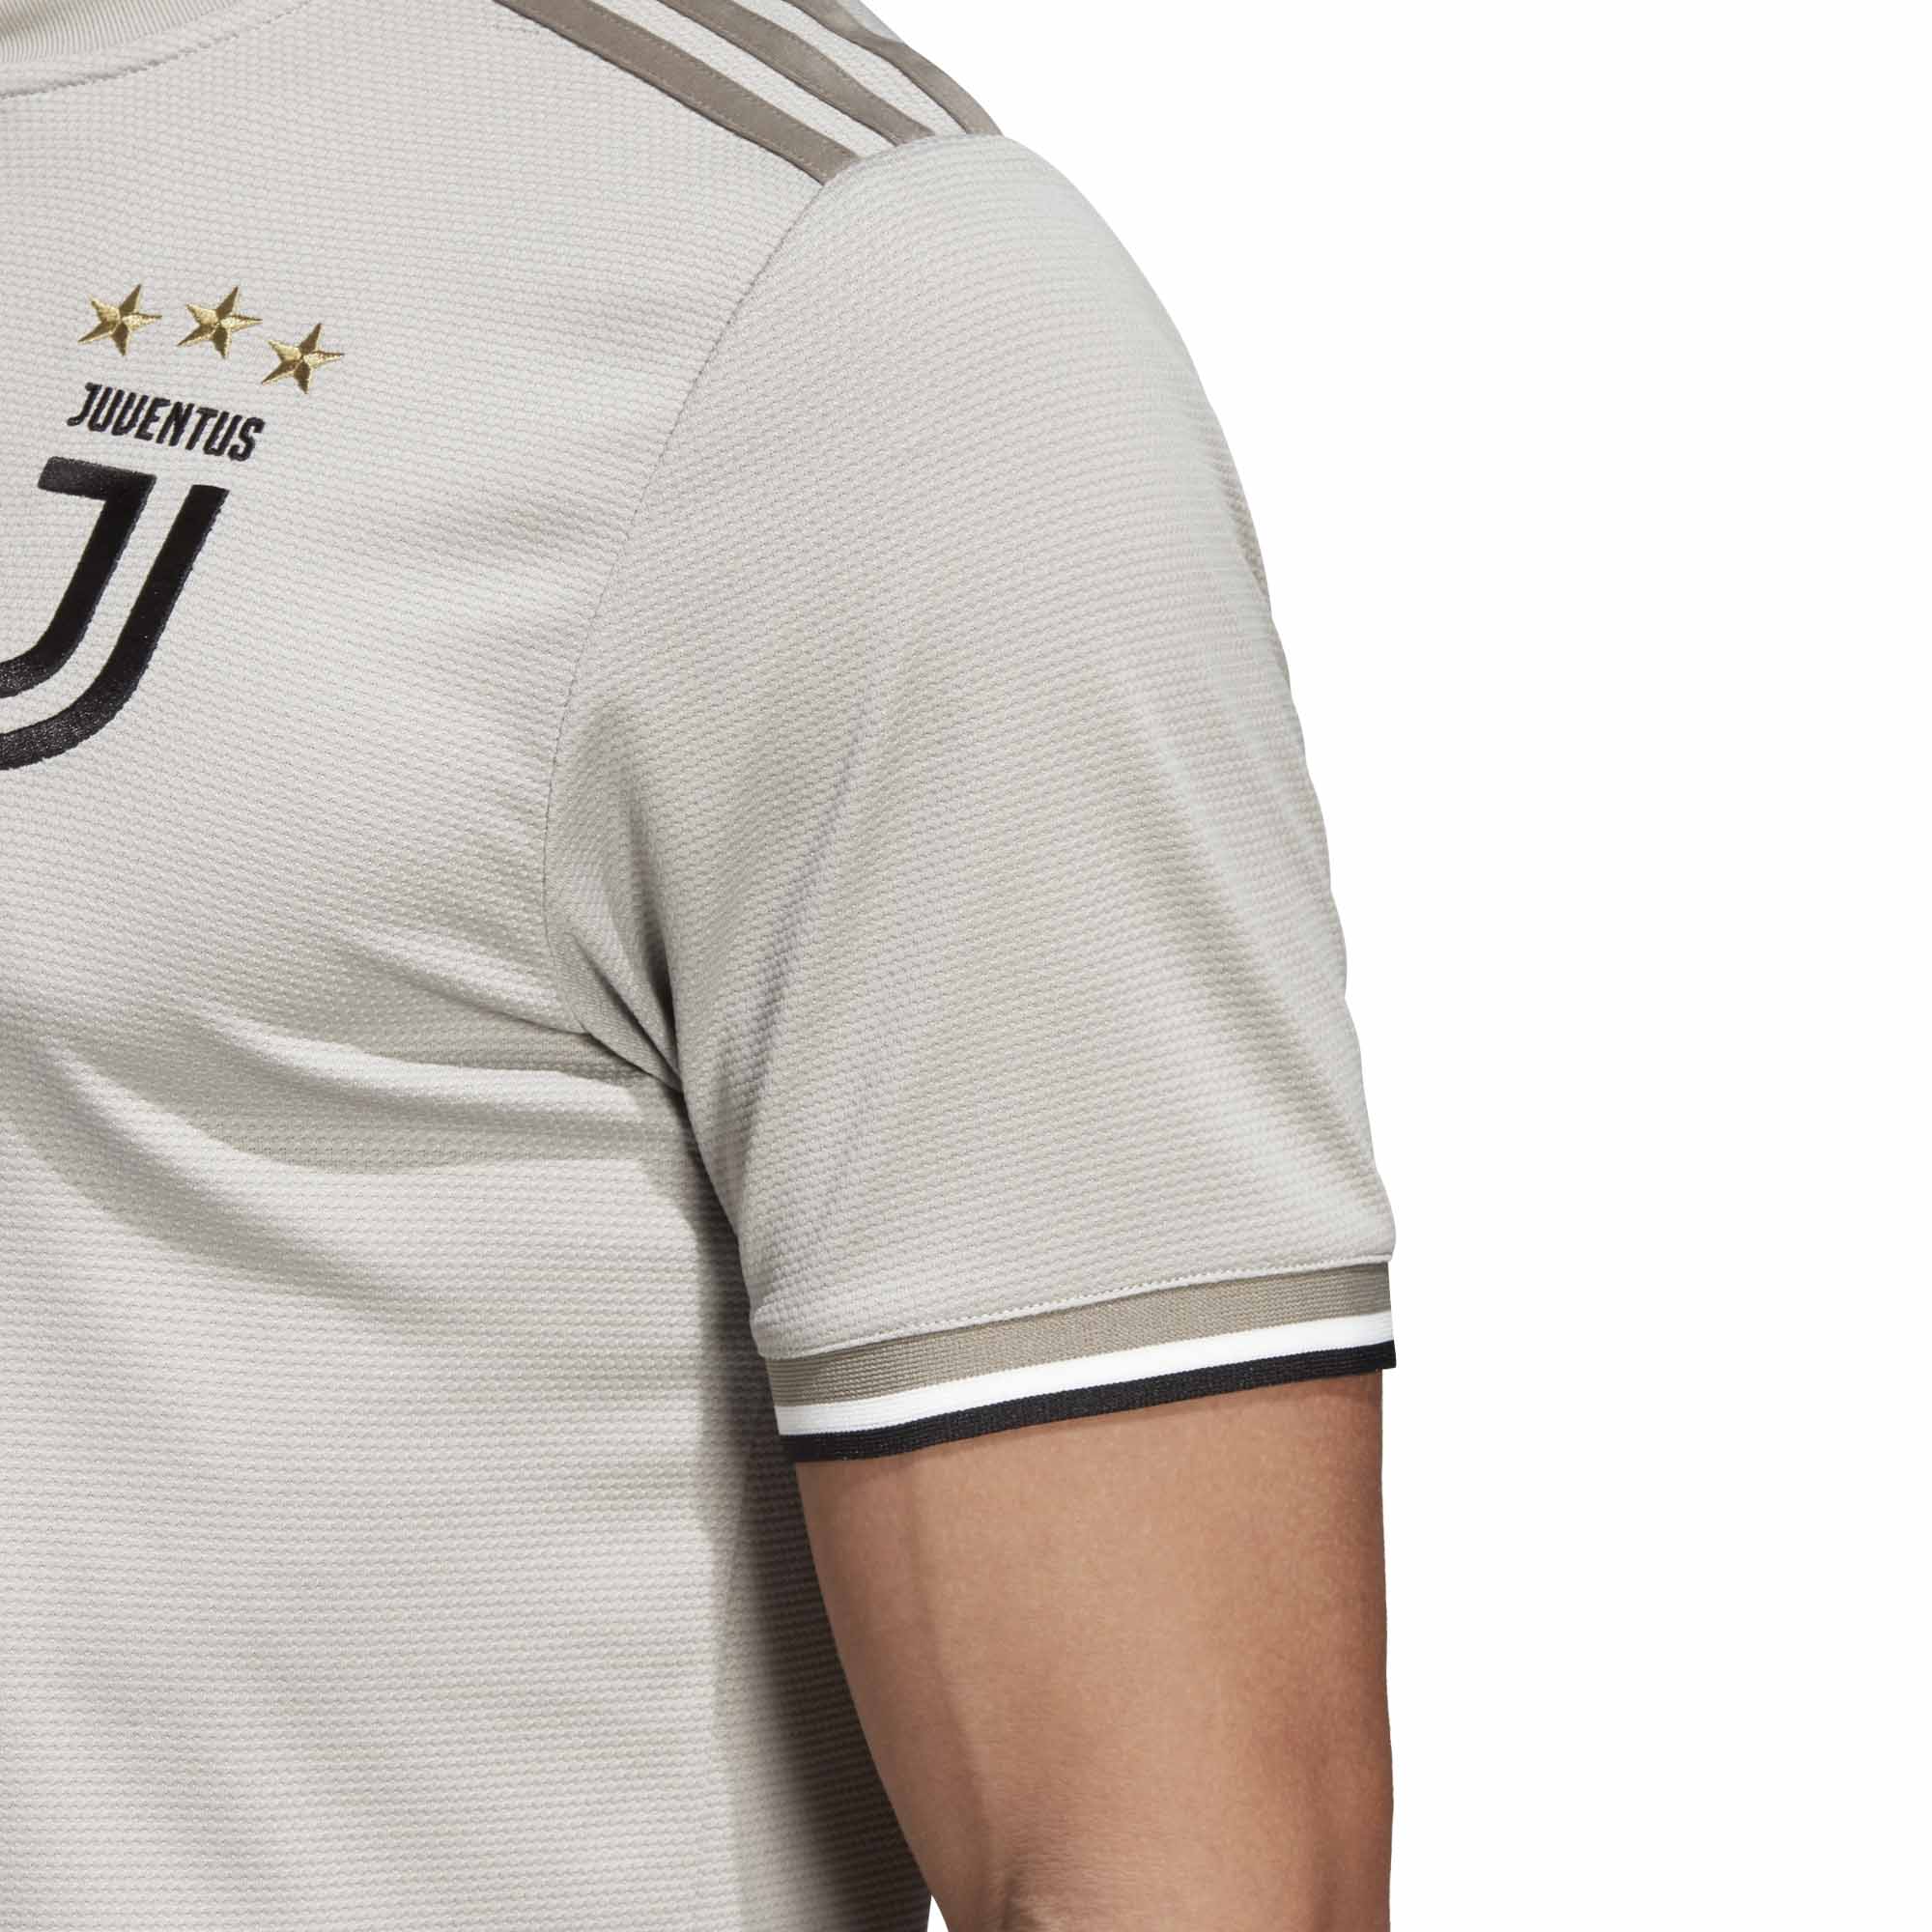 2018/19 Kids adidas Juventus Away Jersey - SoccerPro